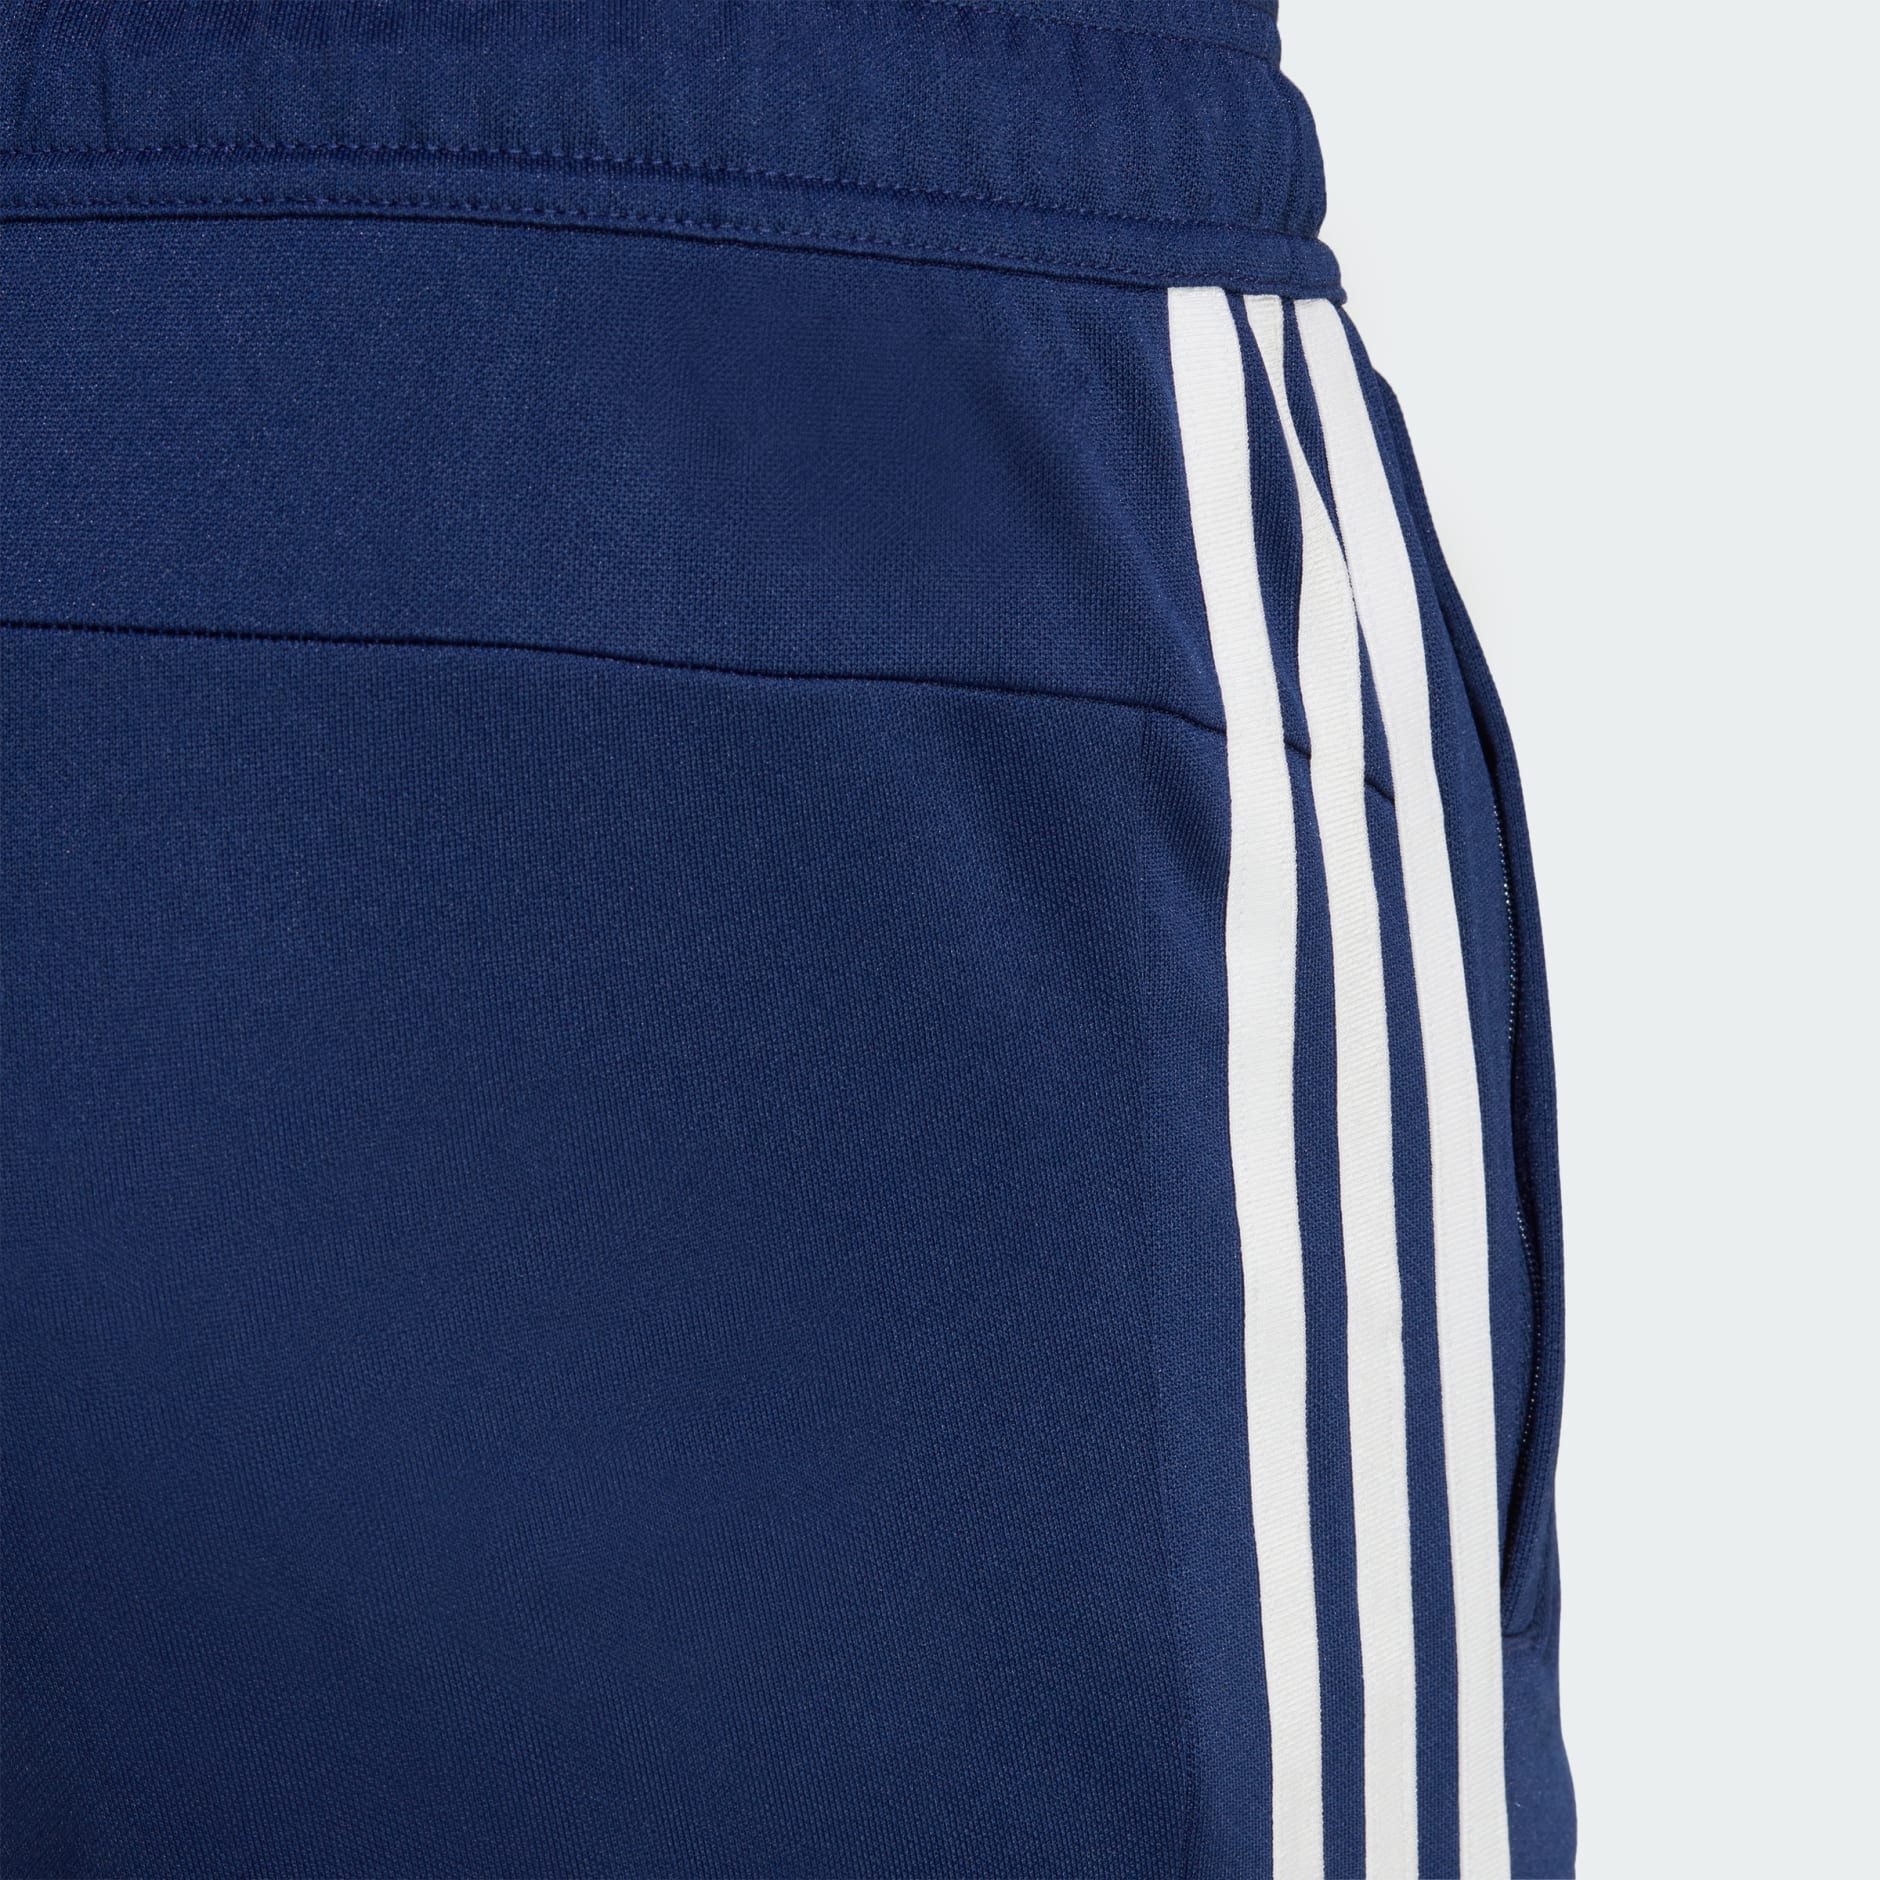 Pantalon Adidas Homme 3 Stripes Essentials Coton Noir GK8821